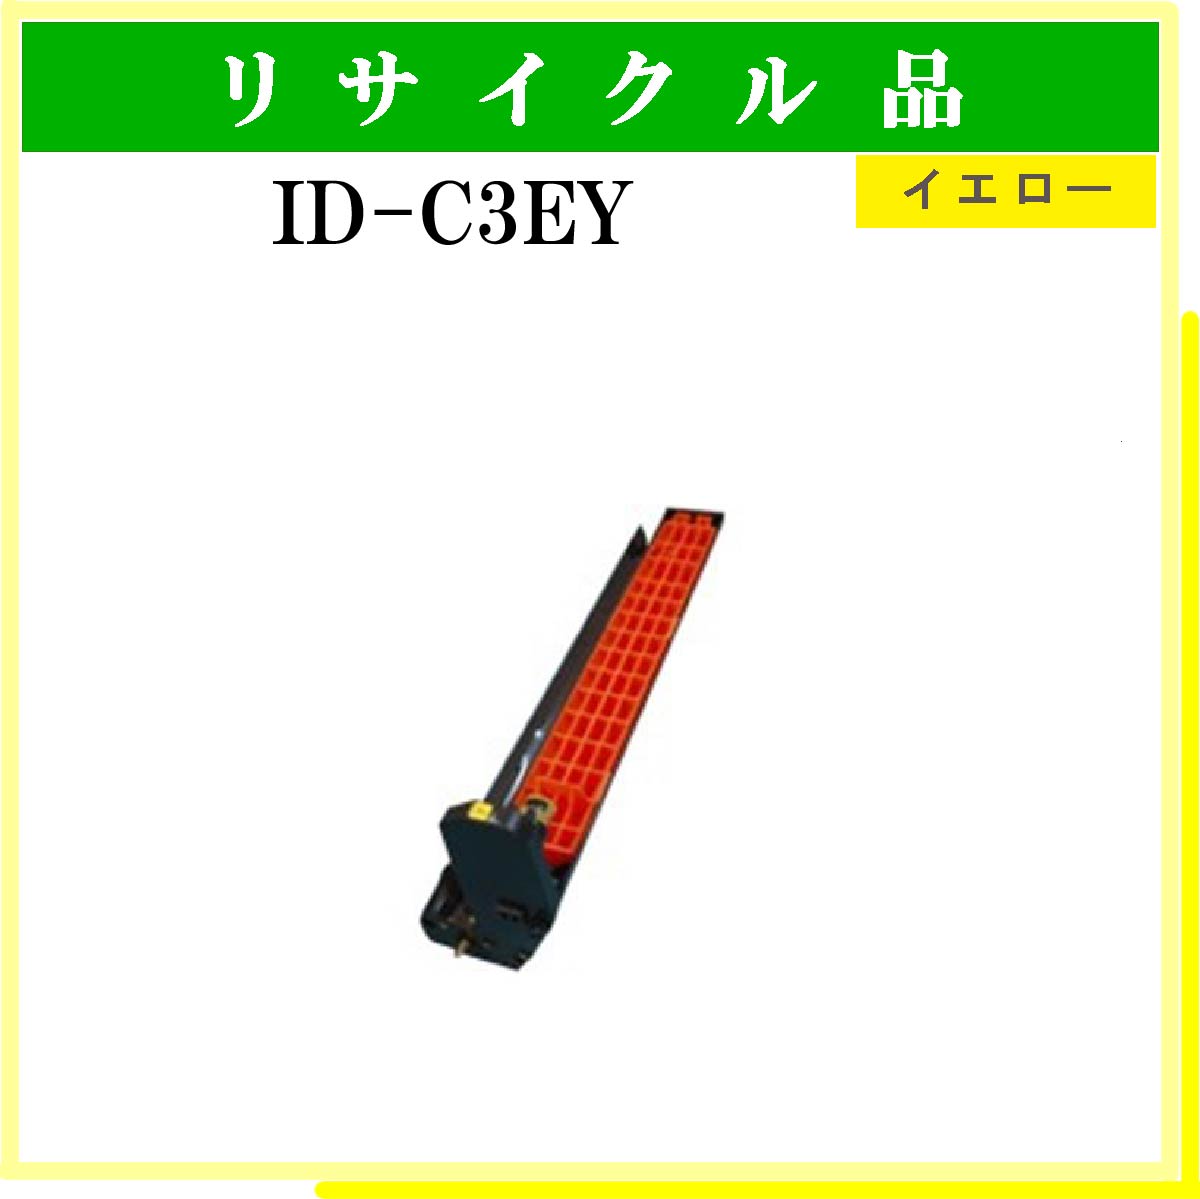 ID-C3EY